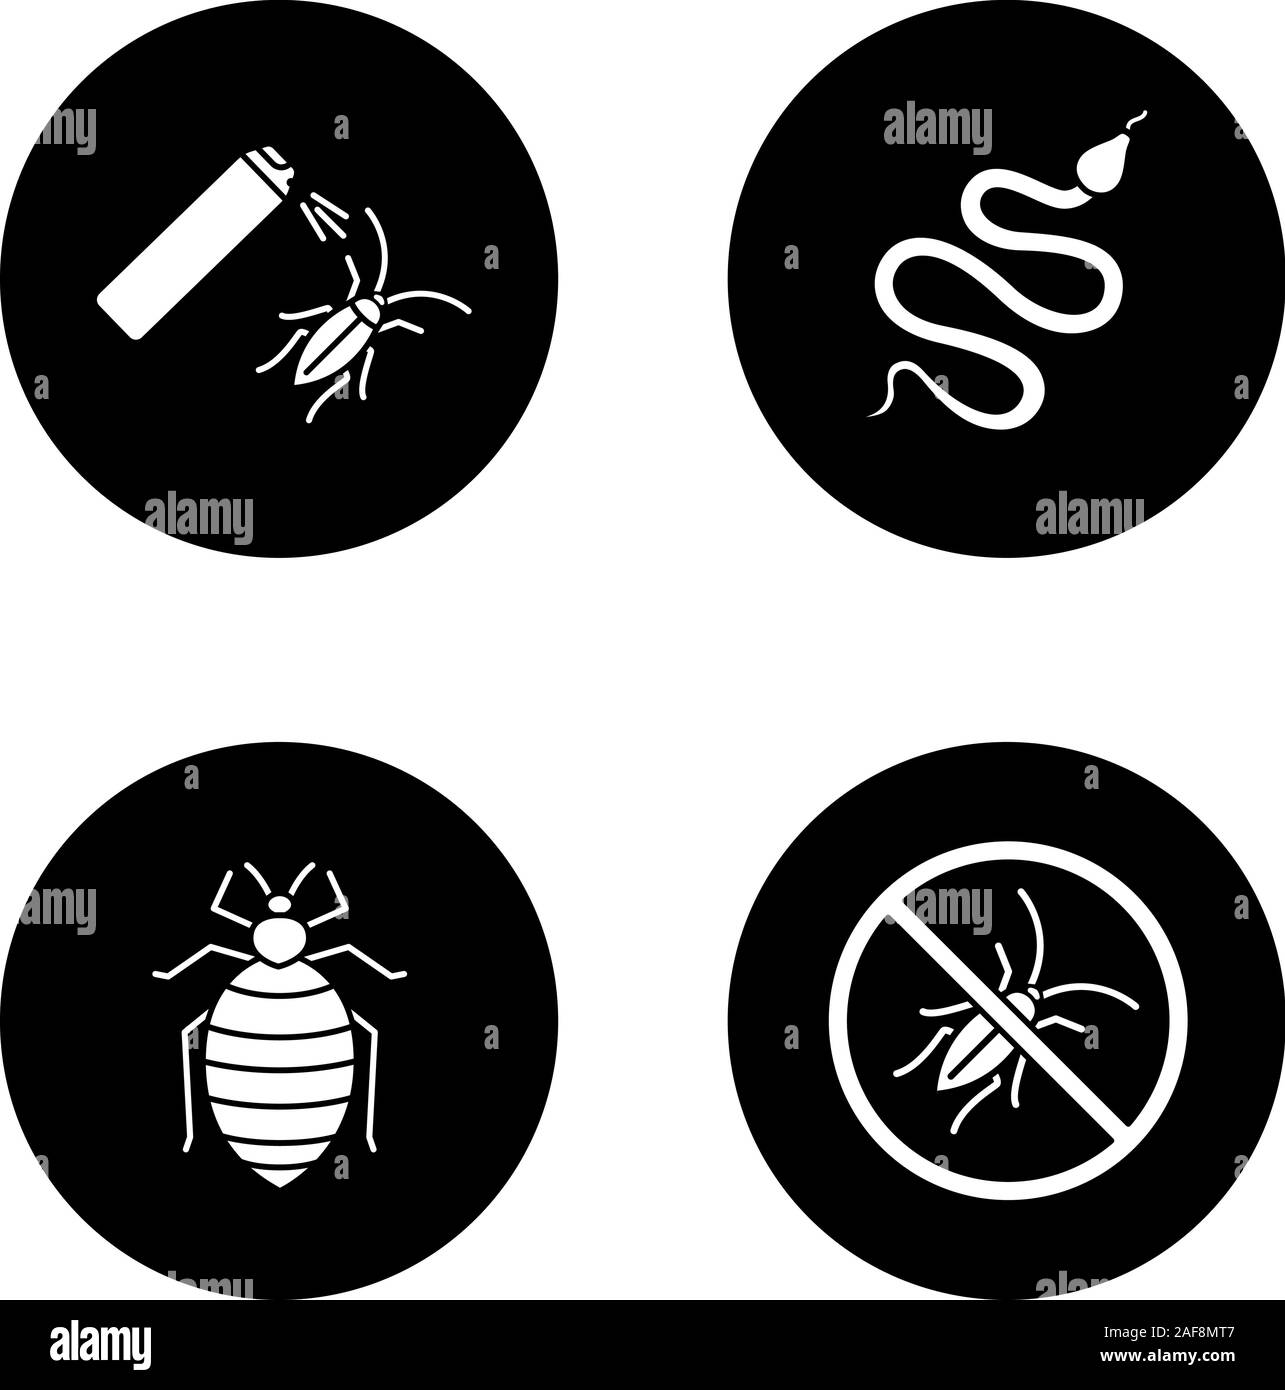 Iconos De Pictogramas Para El Control De Plagas La Serpiente Bed Bug Cebo Cucaracha Deje De 9467